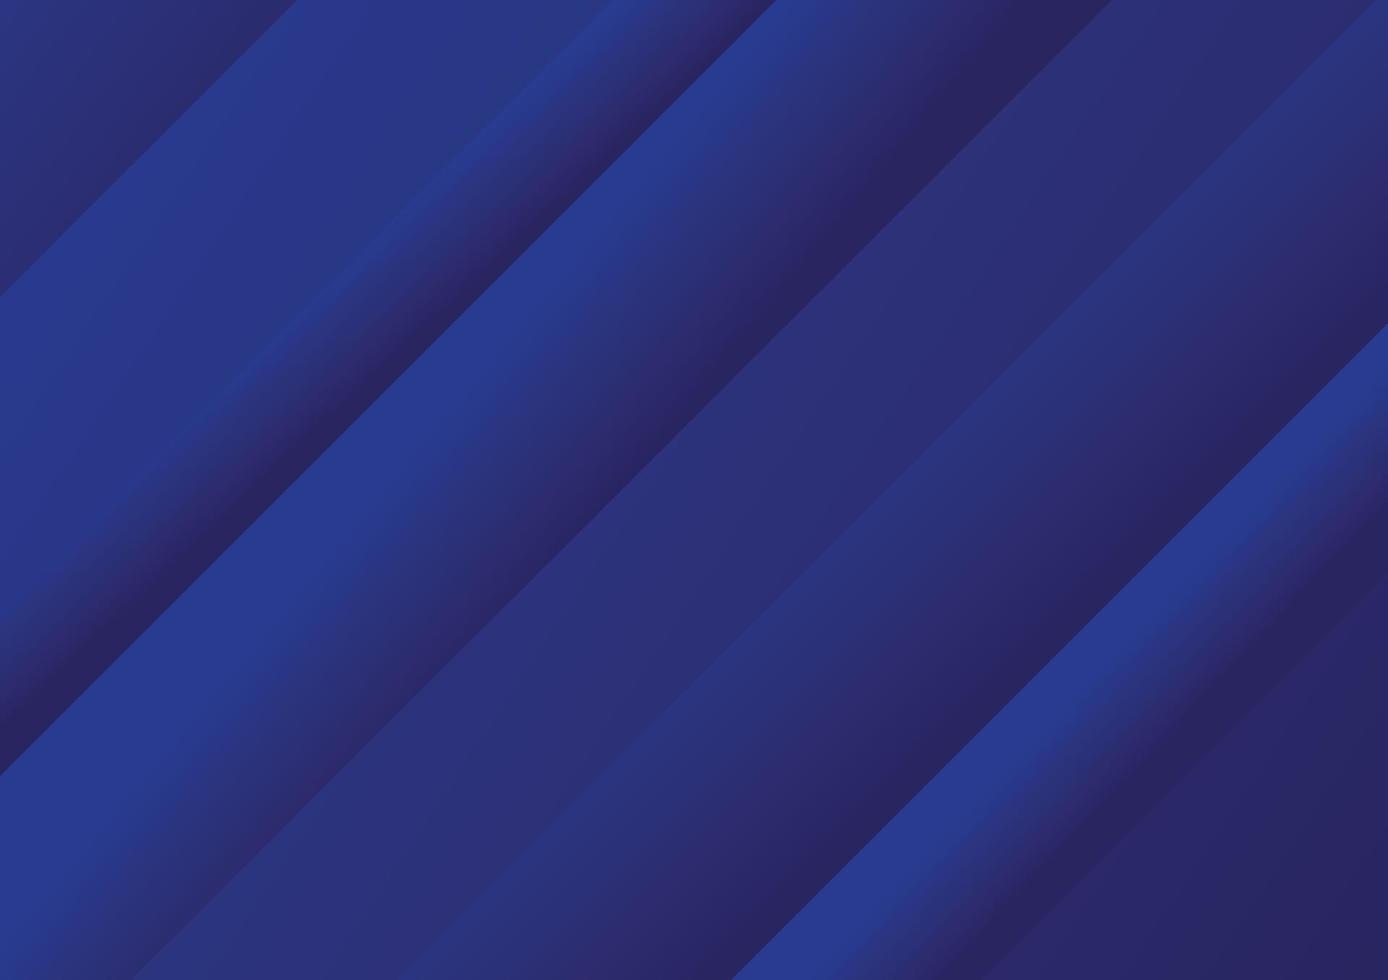 abstrakter Hintergrund mit blauem Farbverlauf. vektor